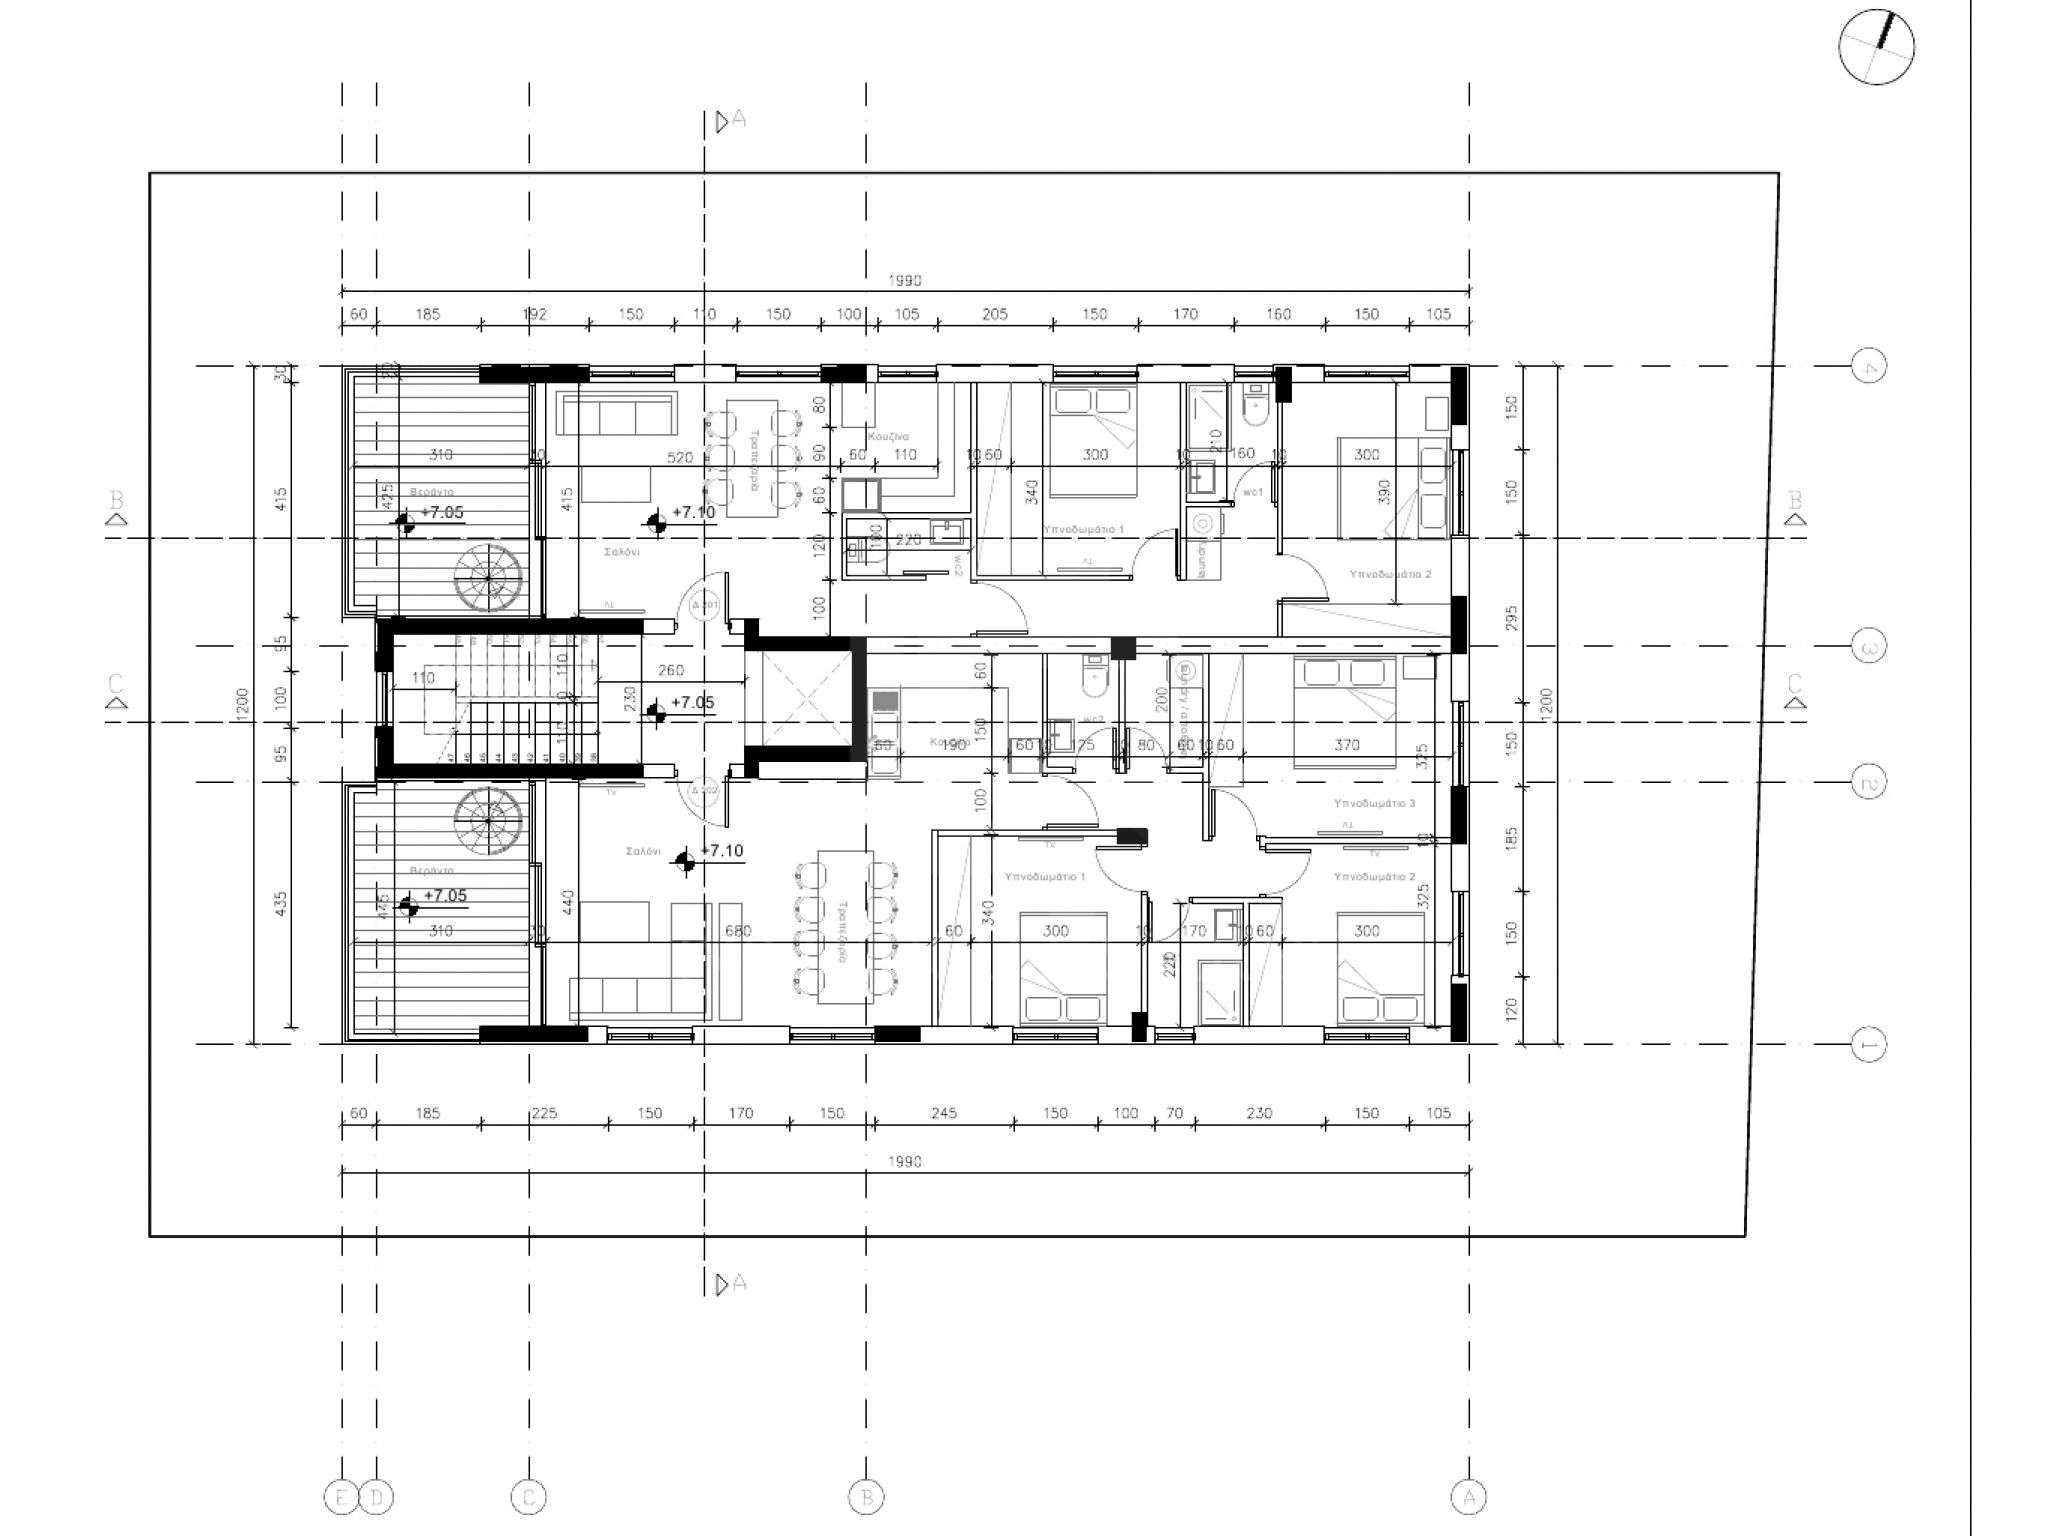 https://www.propertiescy.com/images/uploads/listings/large/16053-1613038396_2nd-floor-plan.jpg